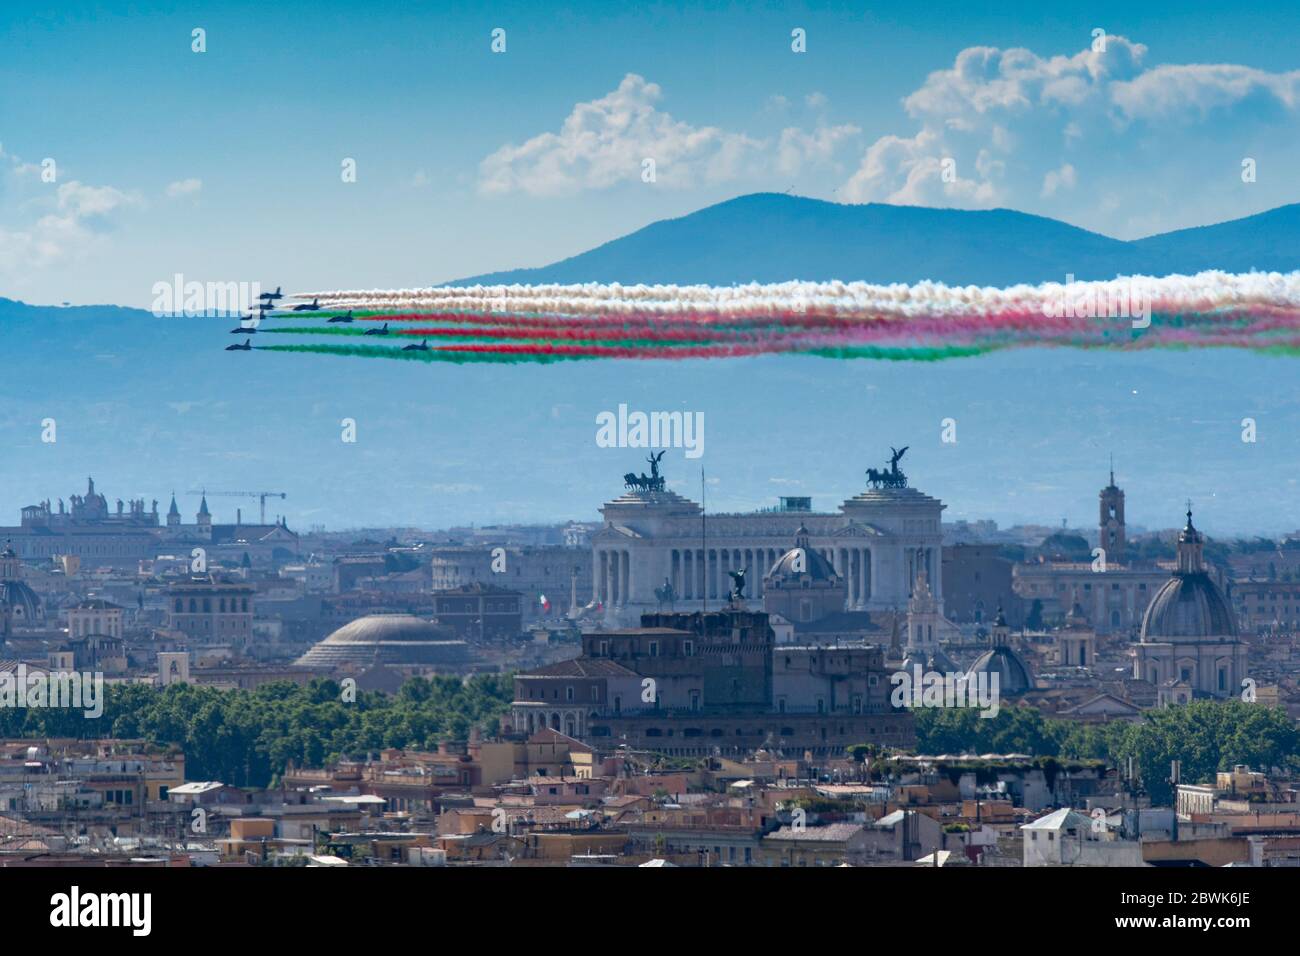 Patrouille acrobatique de 'Frecce tricolori' au-dessus du ciel de Rome Banque D'Images